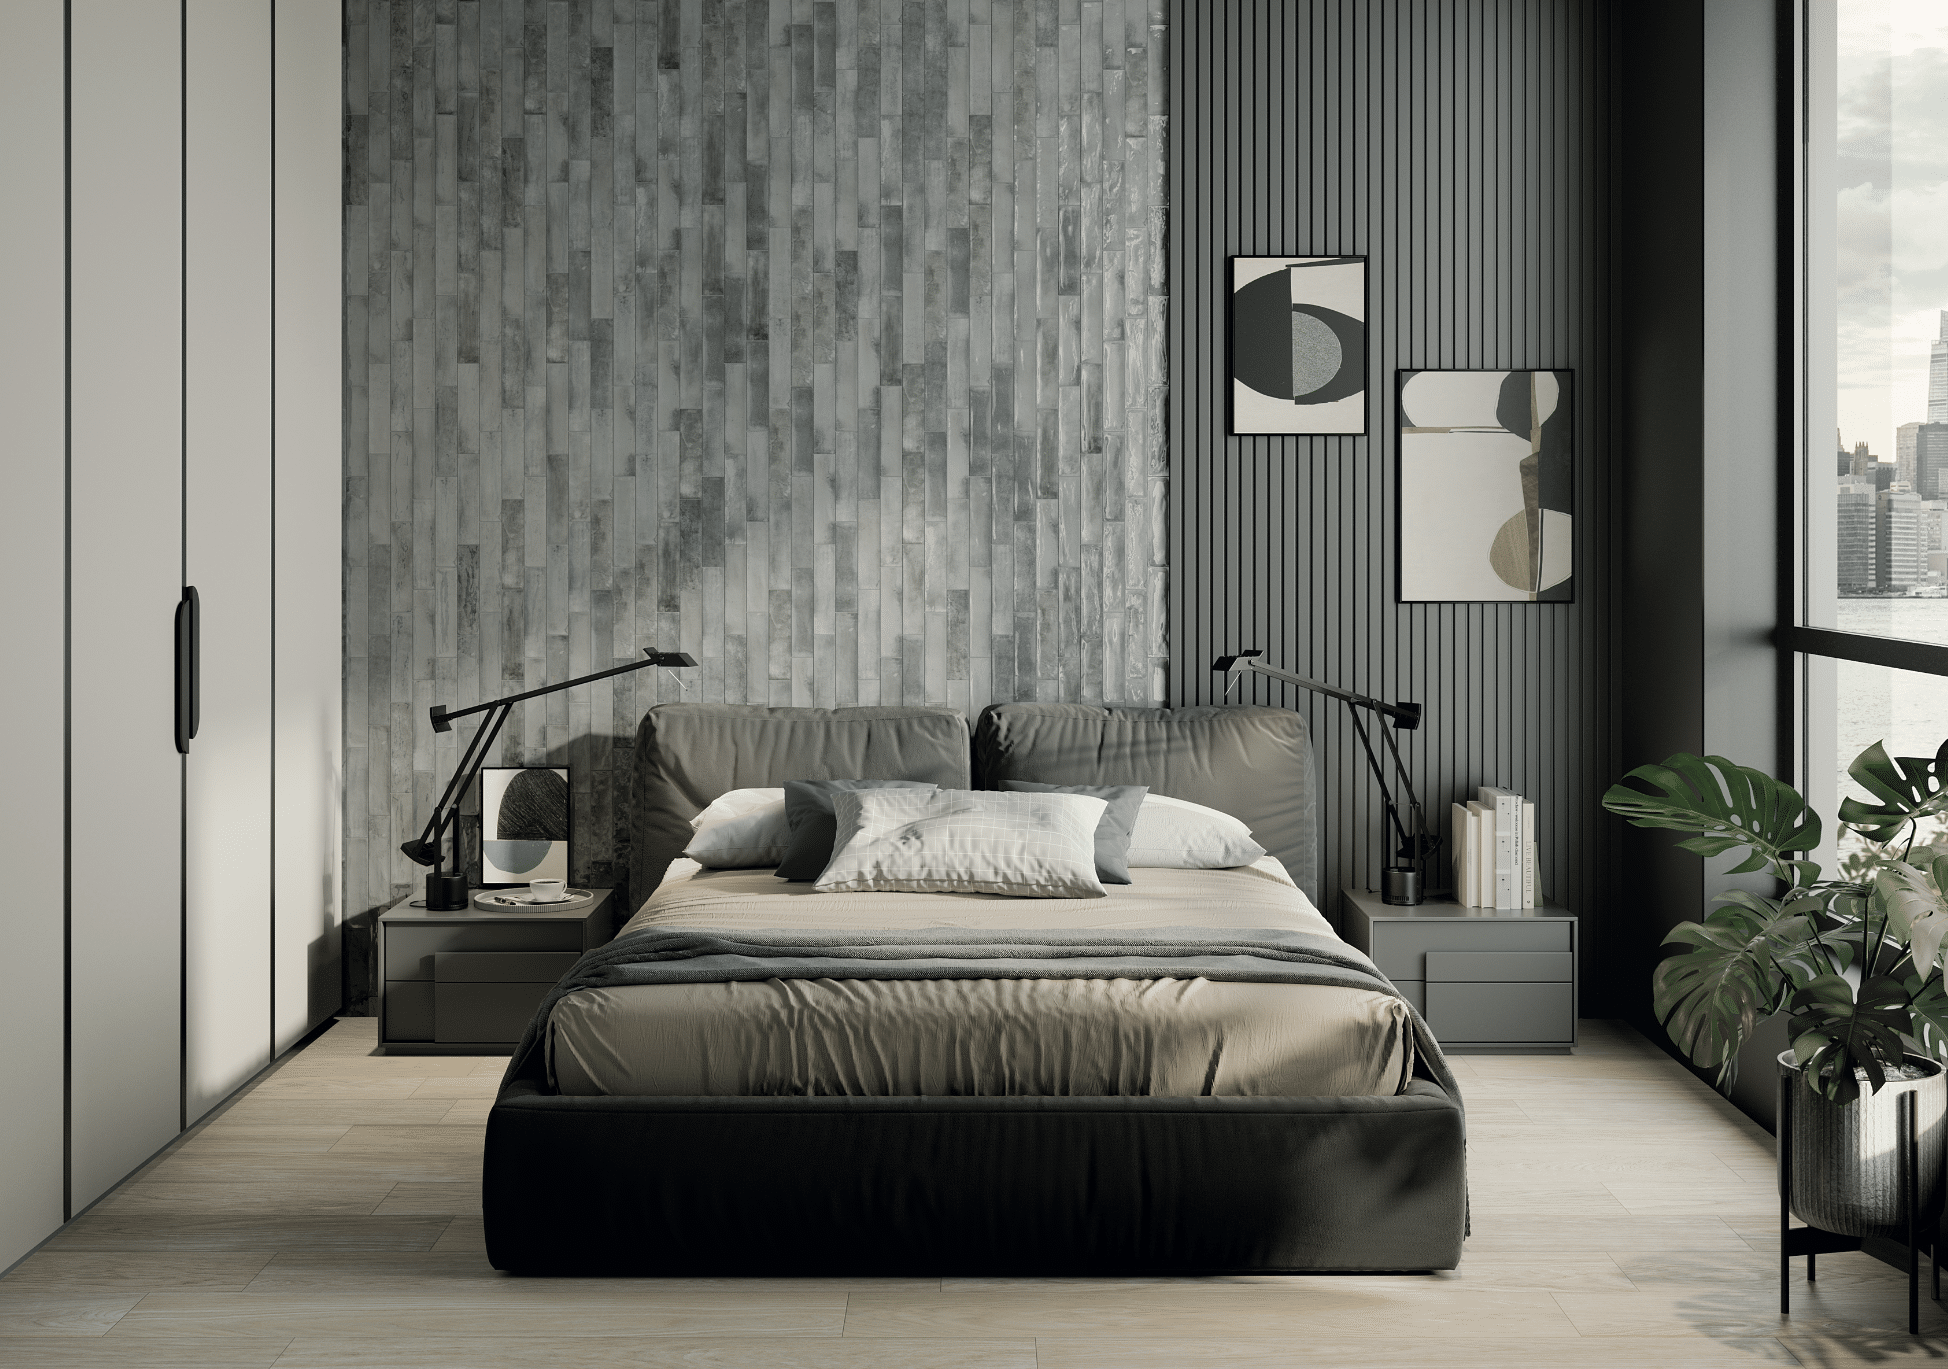 Fliesendorf zeigt ein modernes Schlafzimmer mit textilem Doppelbett vor einer gefliesten Wand mit kleinen, rechteckigen Fliesen in verschiedenen Grautönen und einem Holzboden.